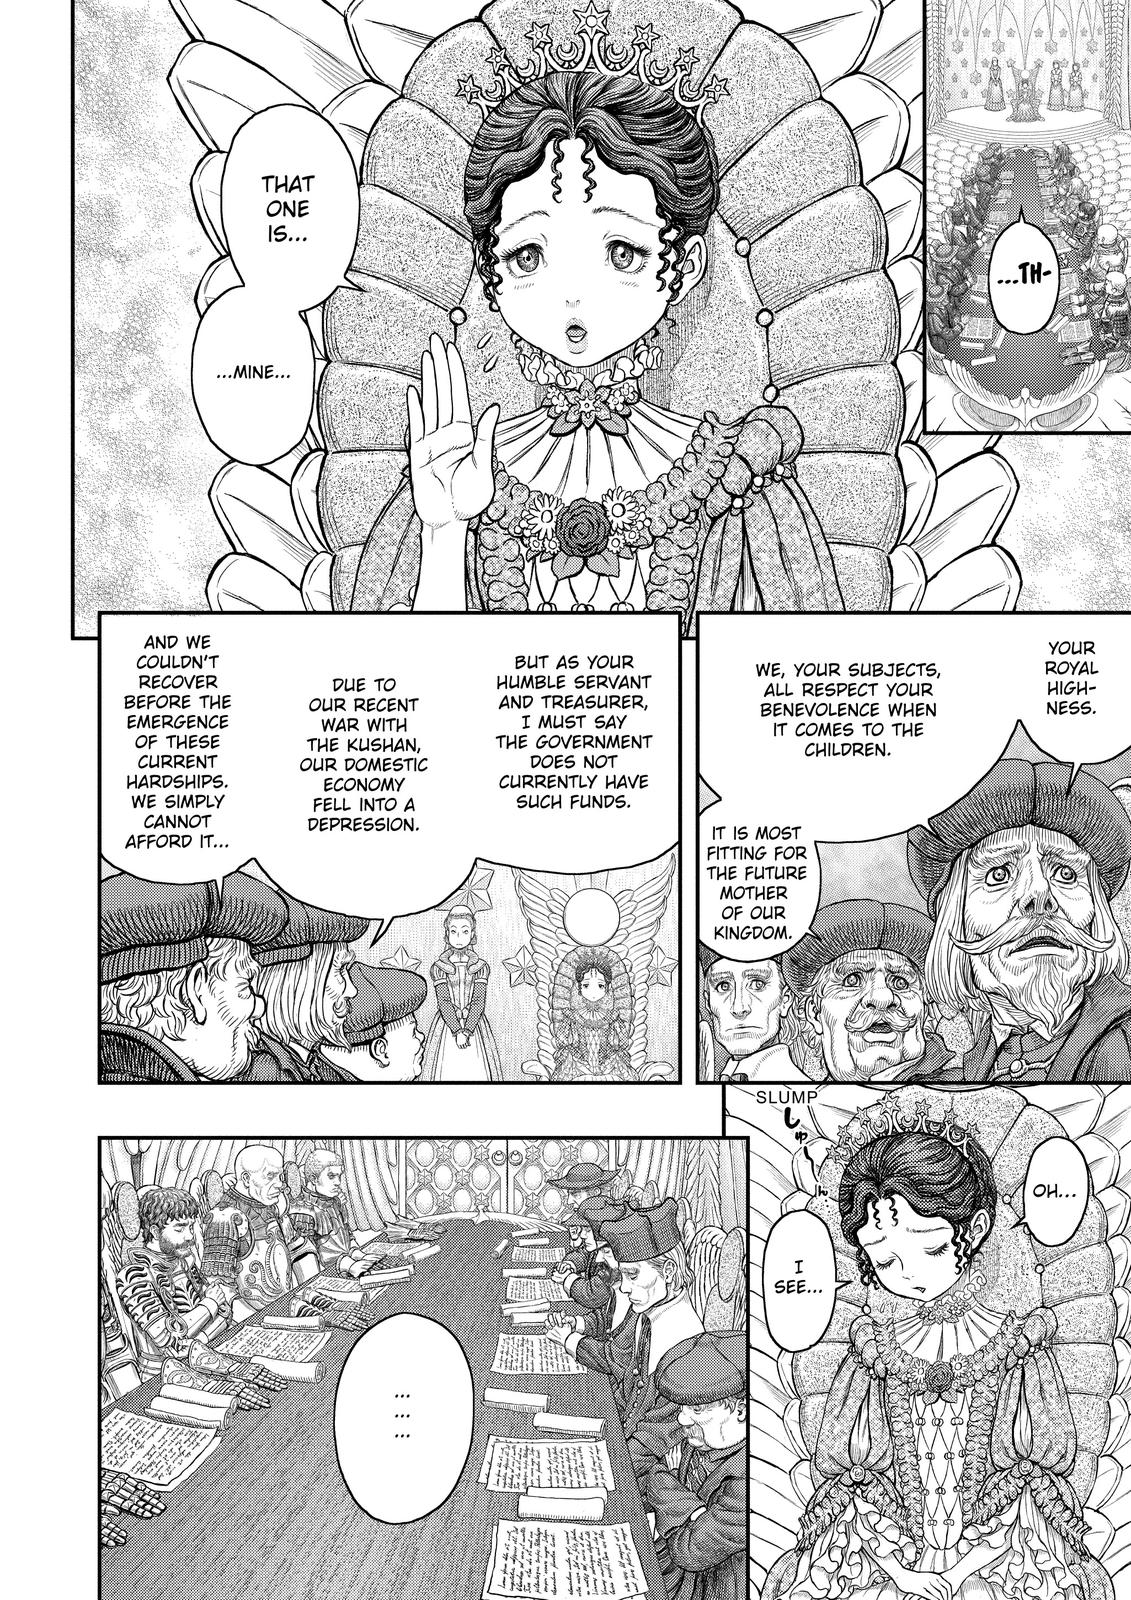 Berserk Manga Chapter 358 image 15